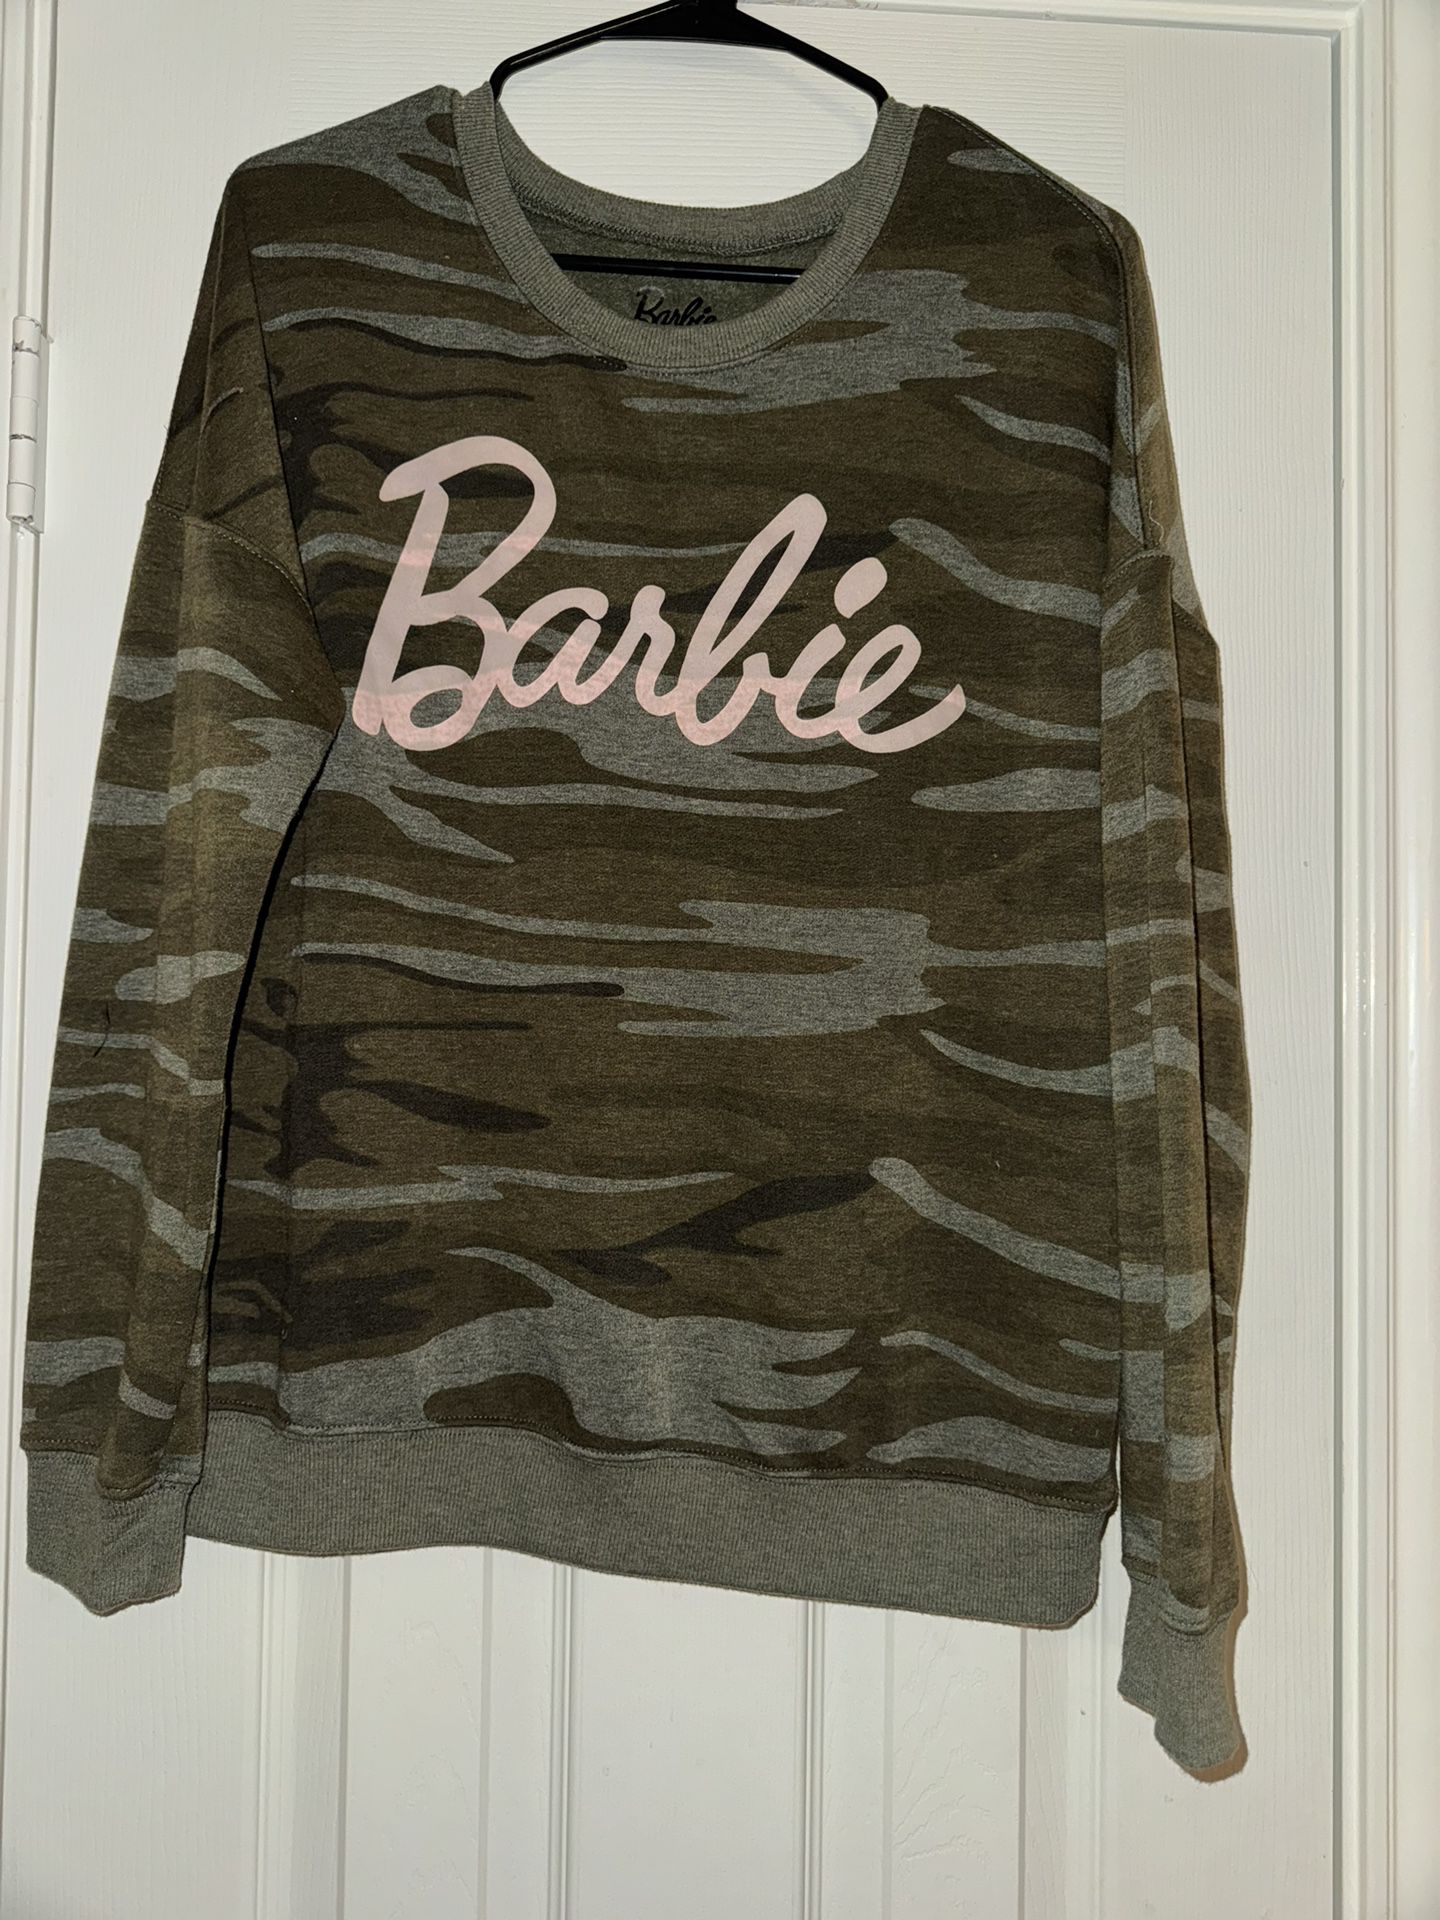 Barbie Camo Sweatshirt Sz M 